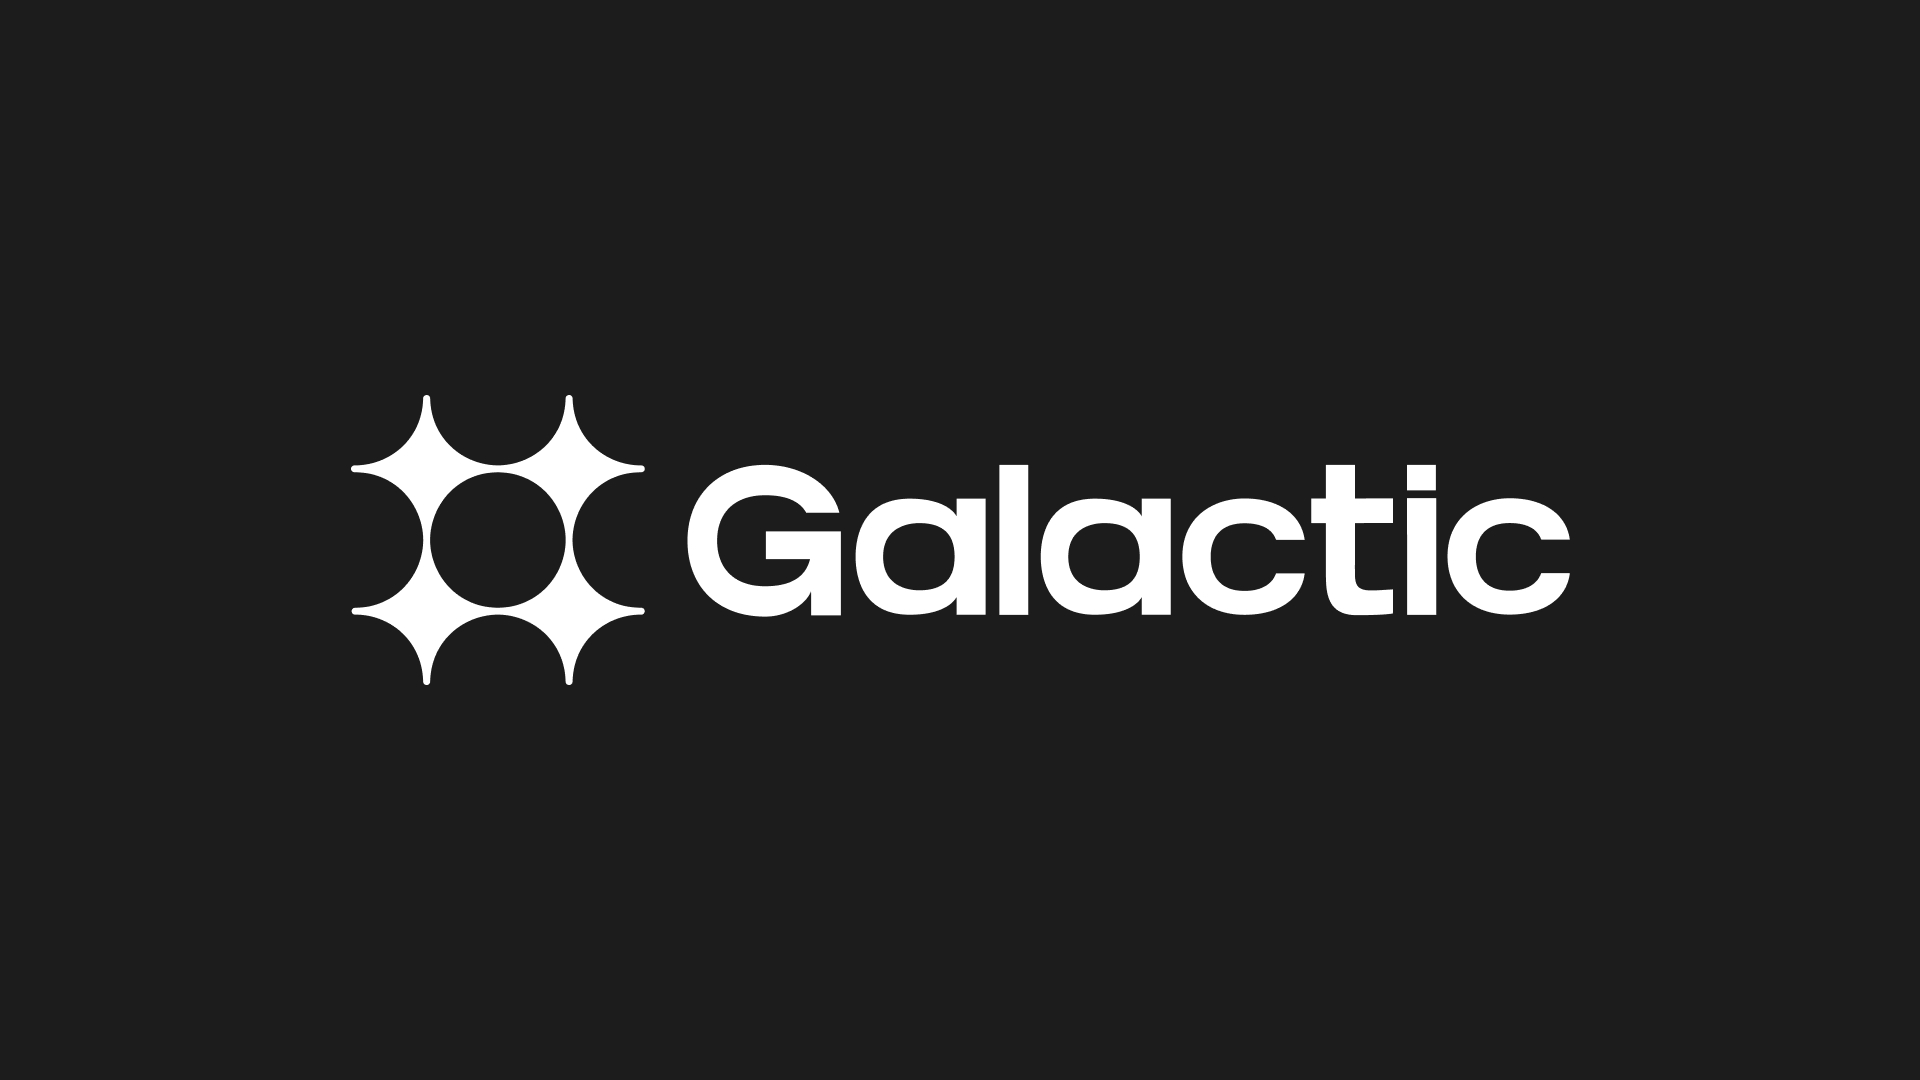 Galactic energy startups animation